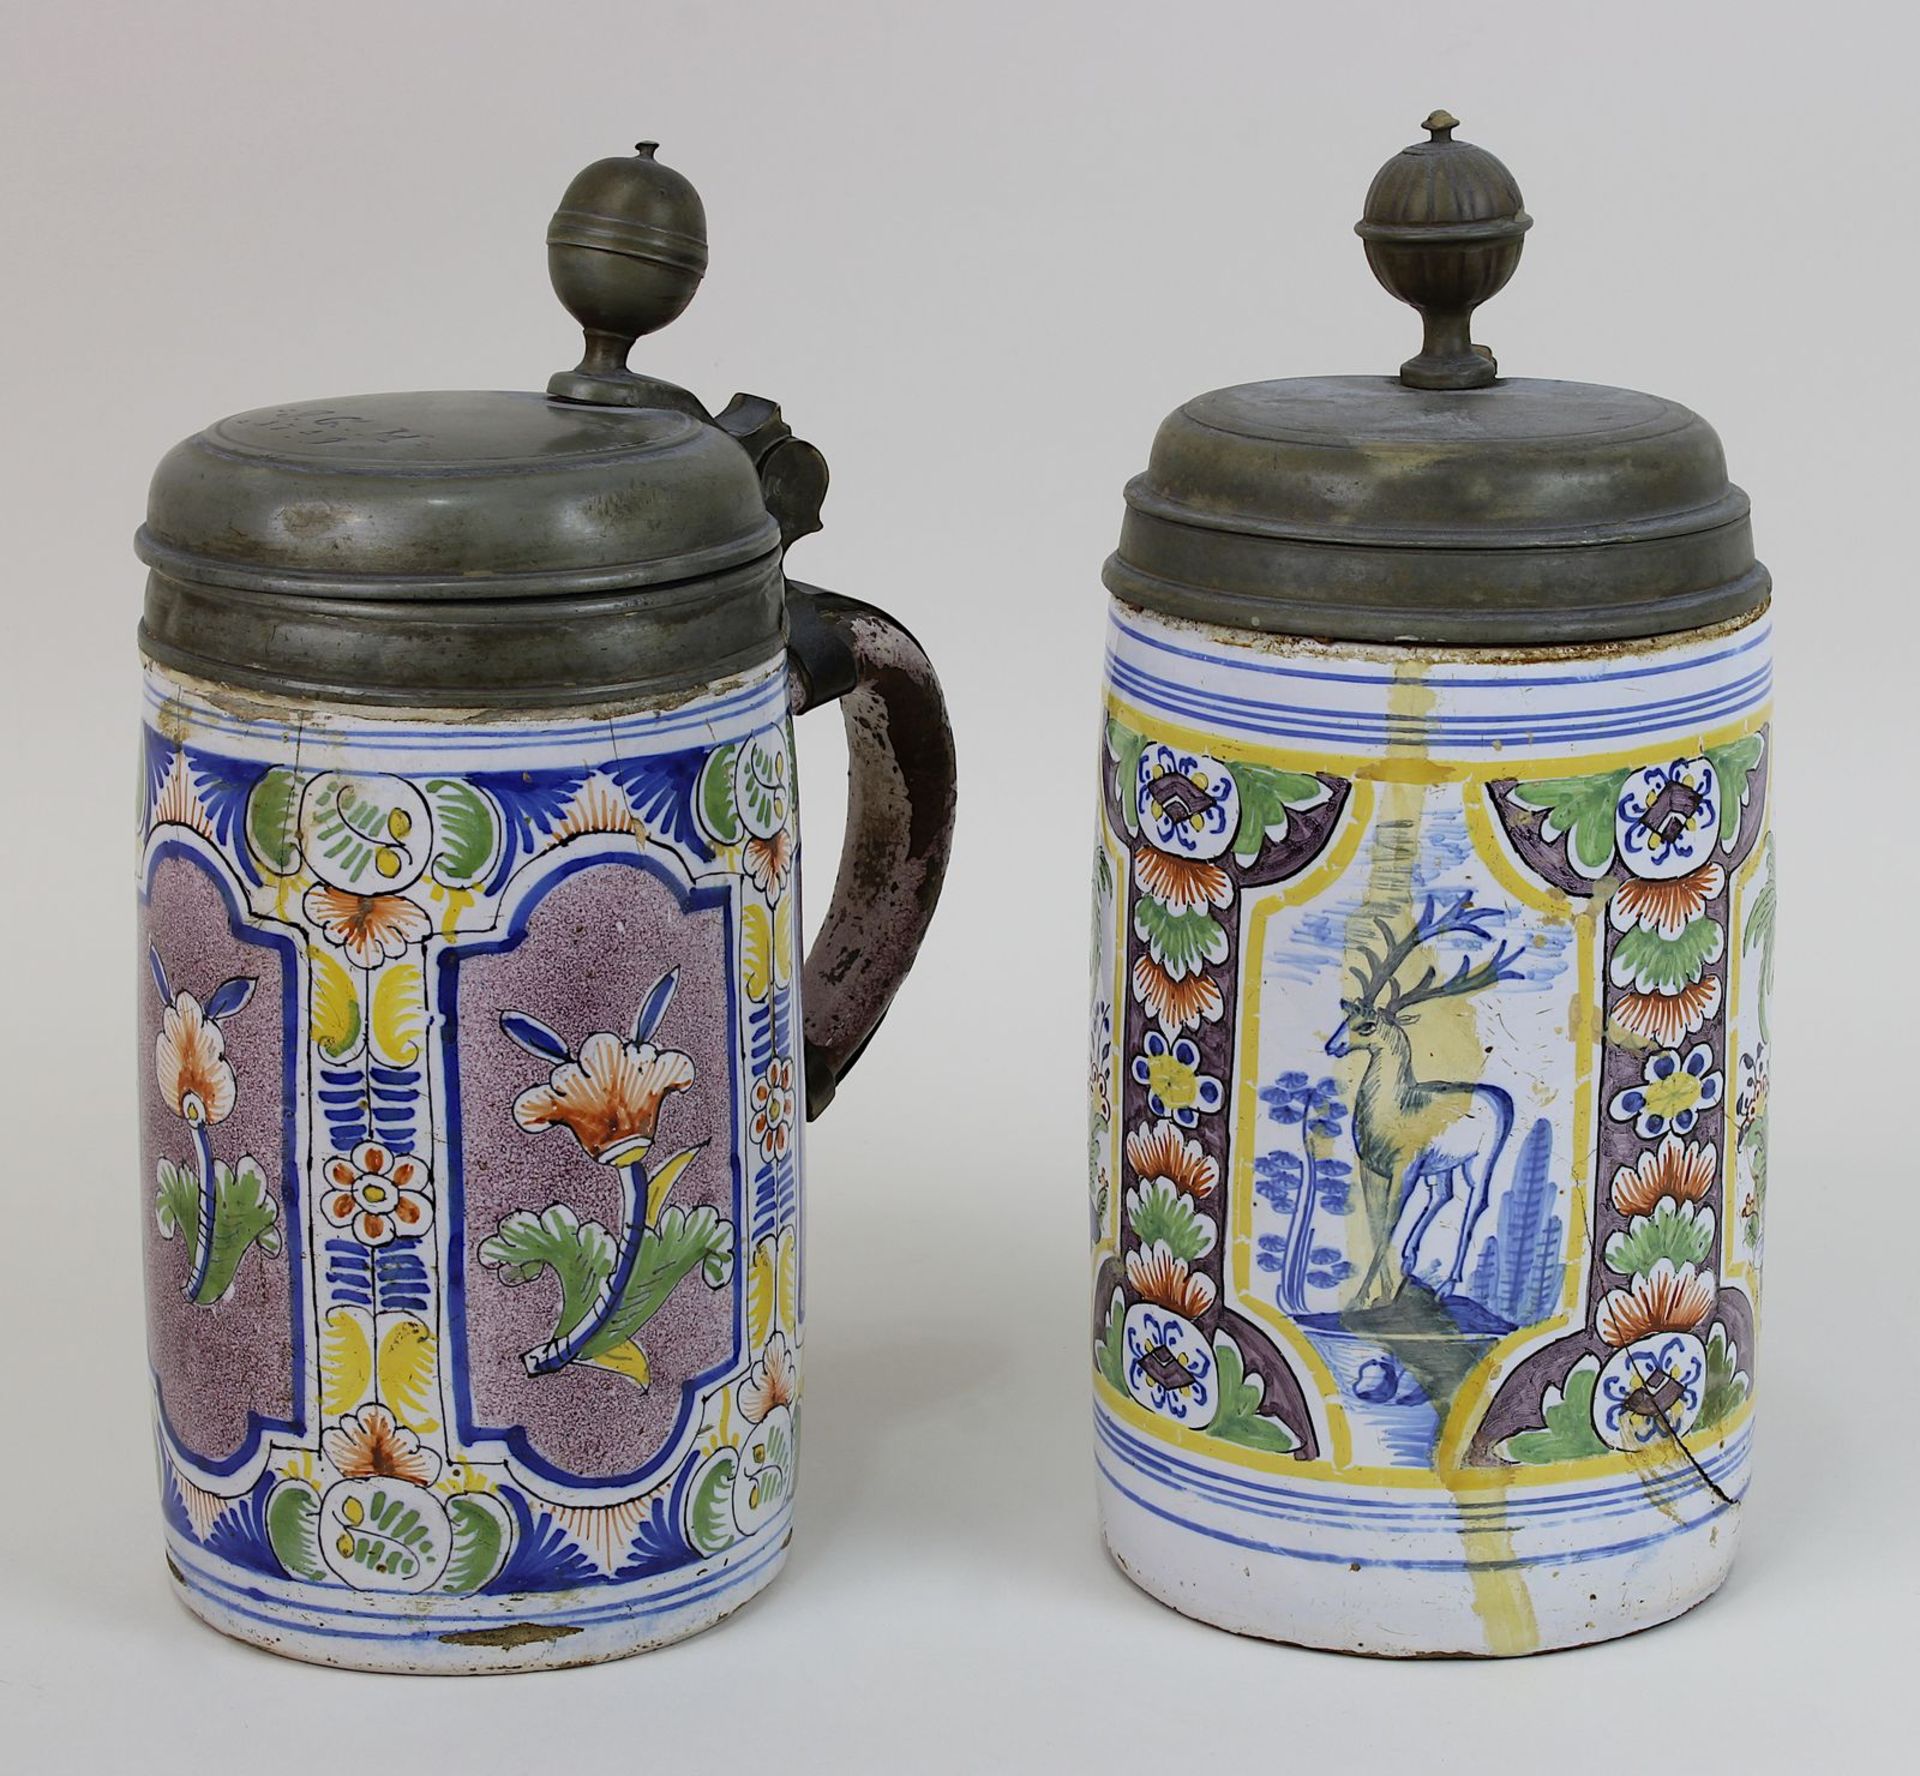 Zwei Fayence-Pilasterwalzenkrüge, 18. Jh., Keramik, heller Scherben, handgedreht, mit